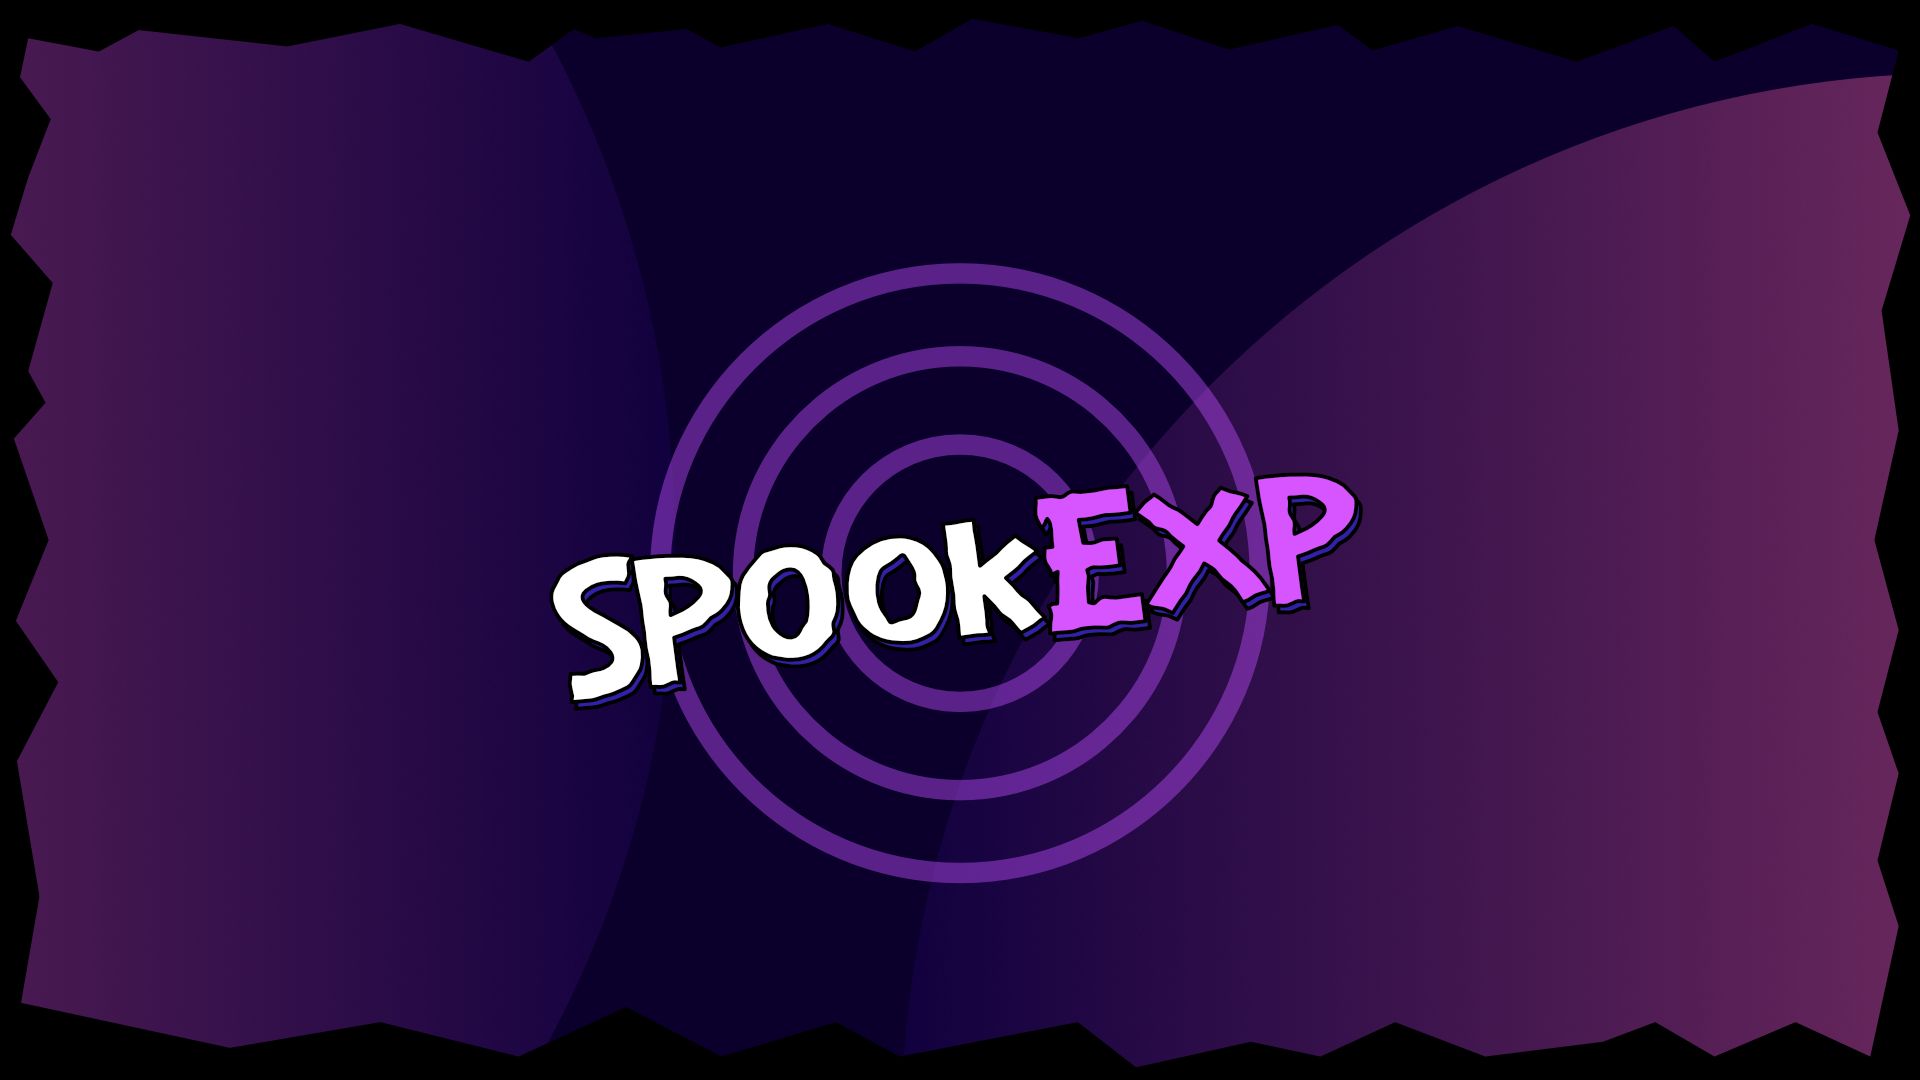 Miniature de Event - SpookExp 2021 : Des menaces alternatives